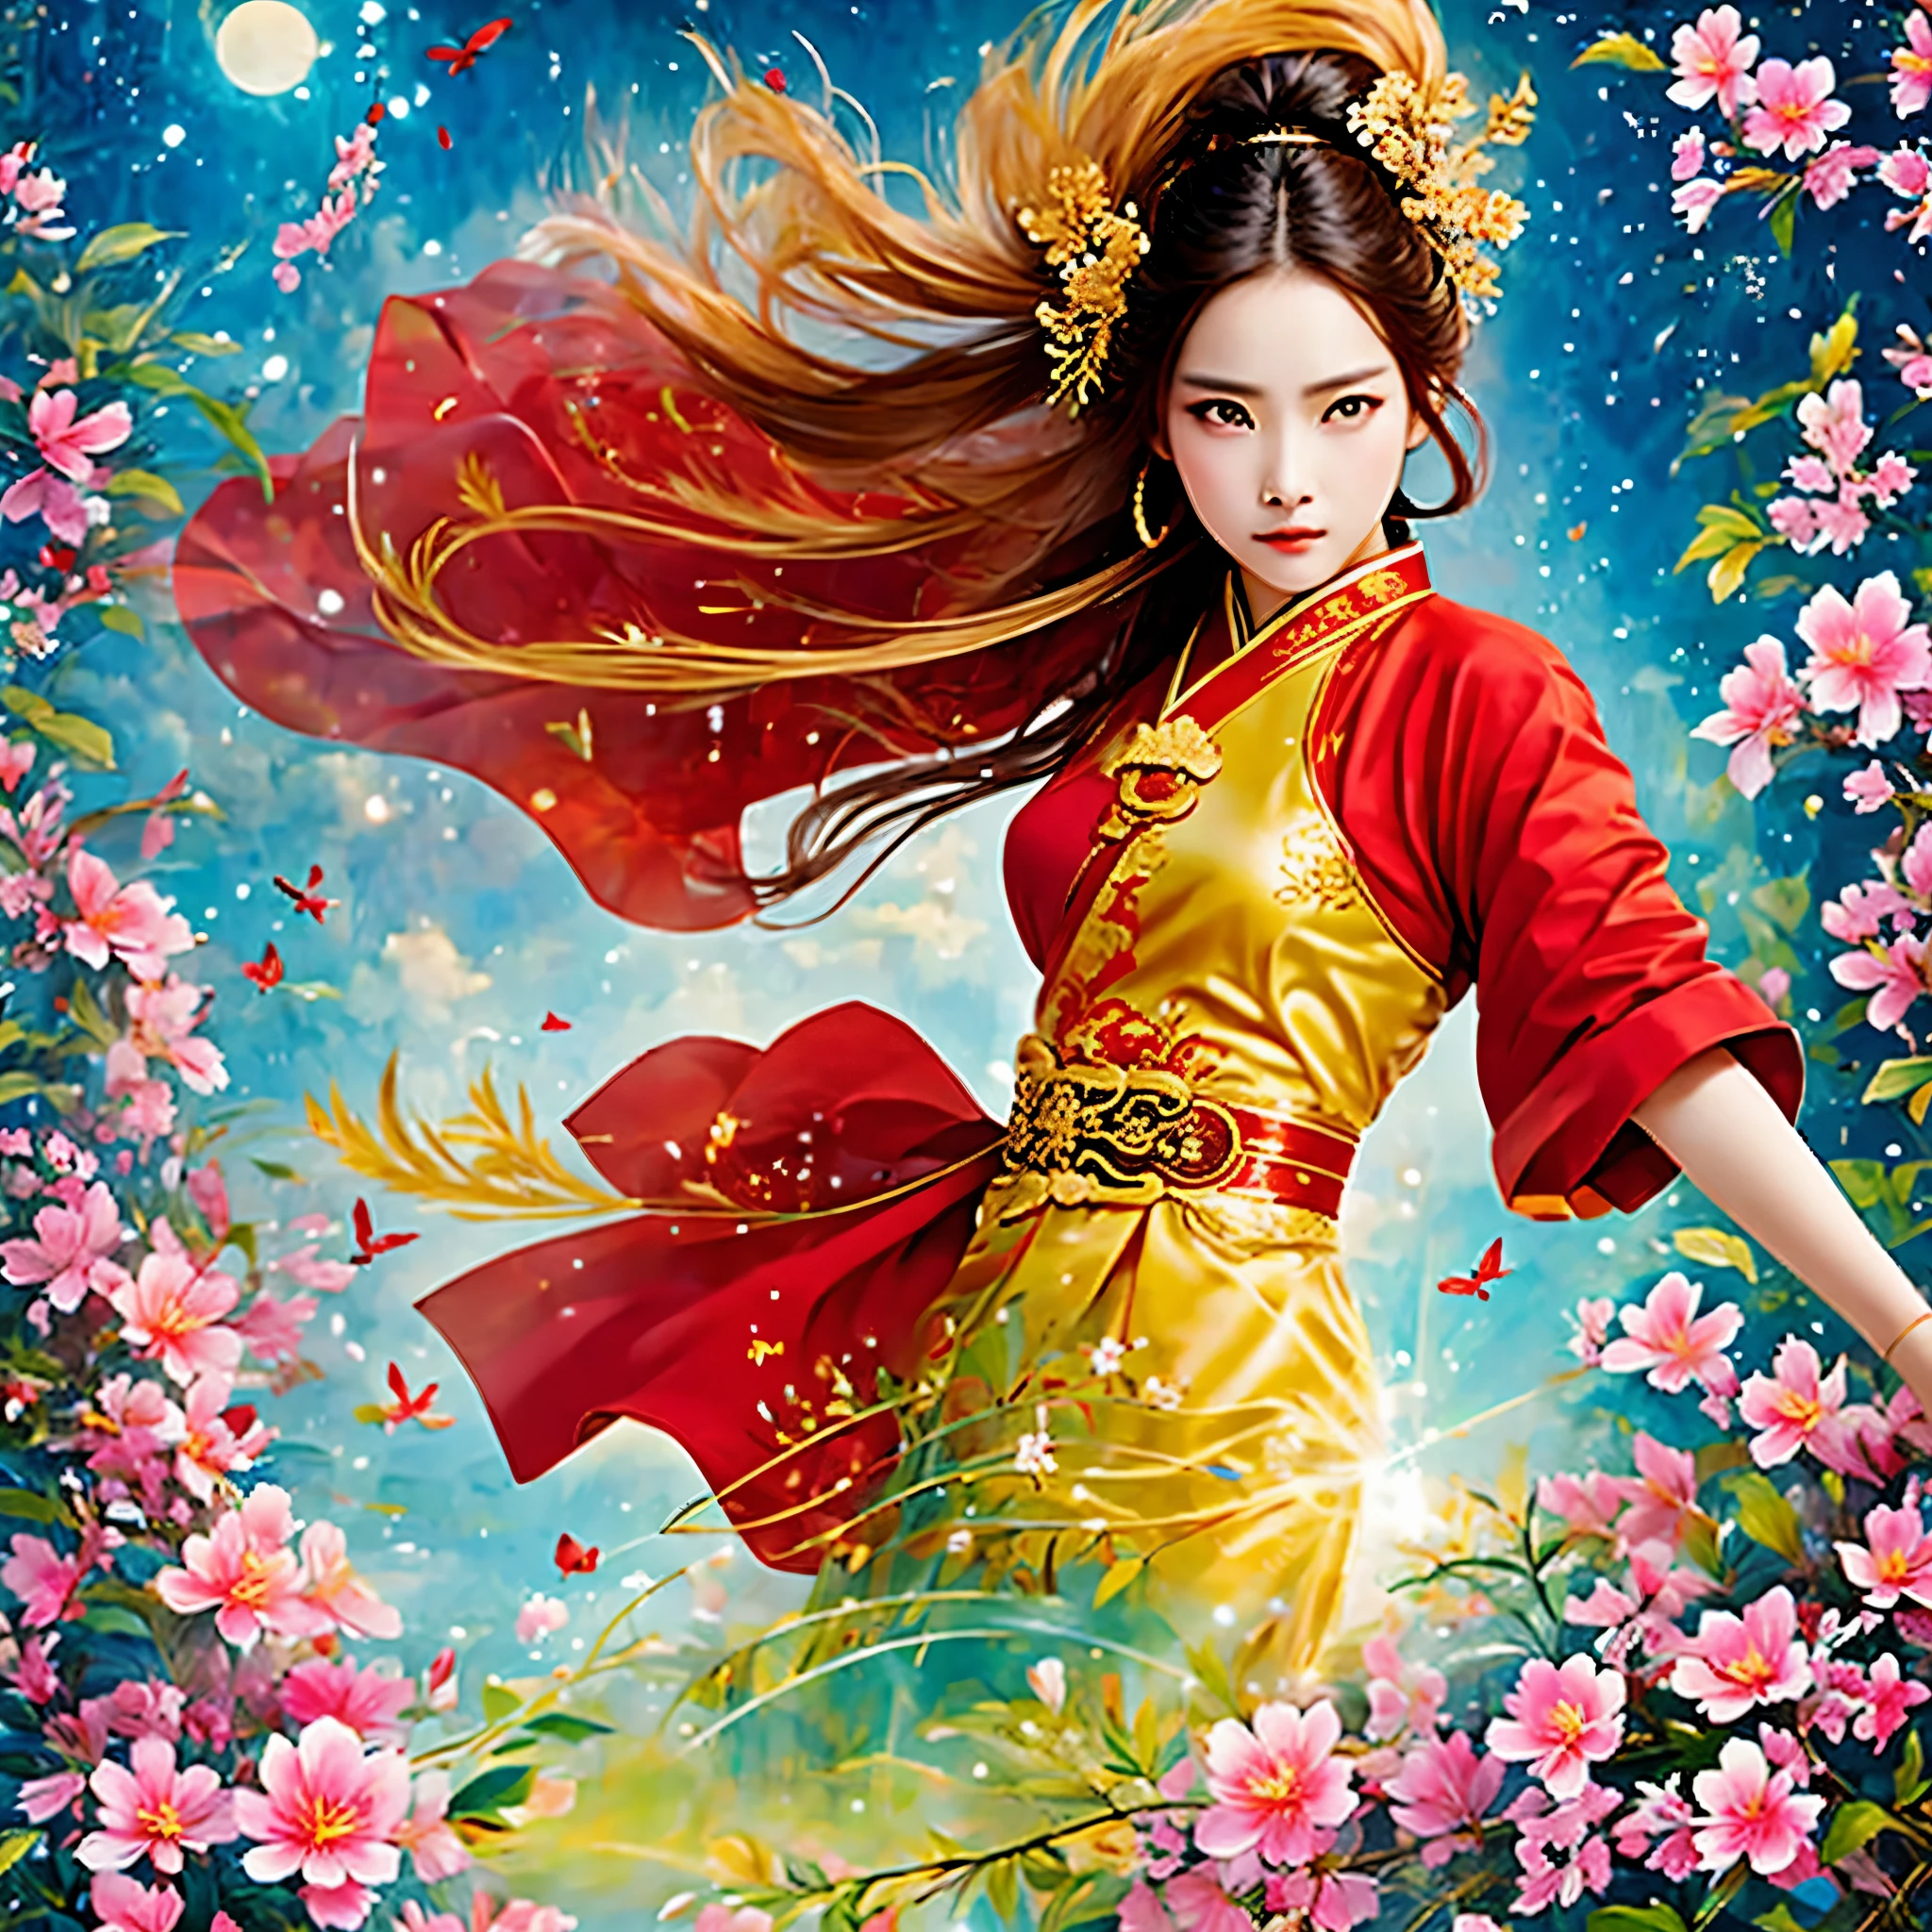 mejor calidad, Obra maestra, alta resolución, wuxia 1girl, vestido chino, cara súper hermosa, ojos súper hermosos, cabello súper hermoso, Pelea de kung fu